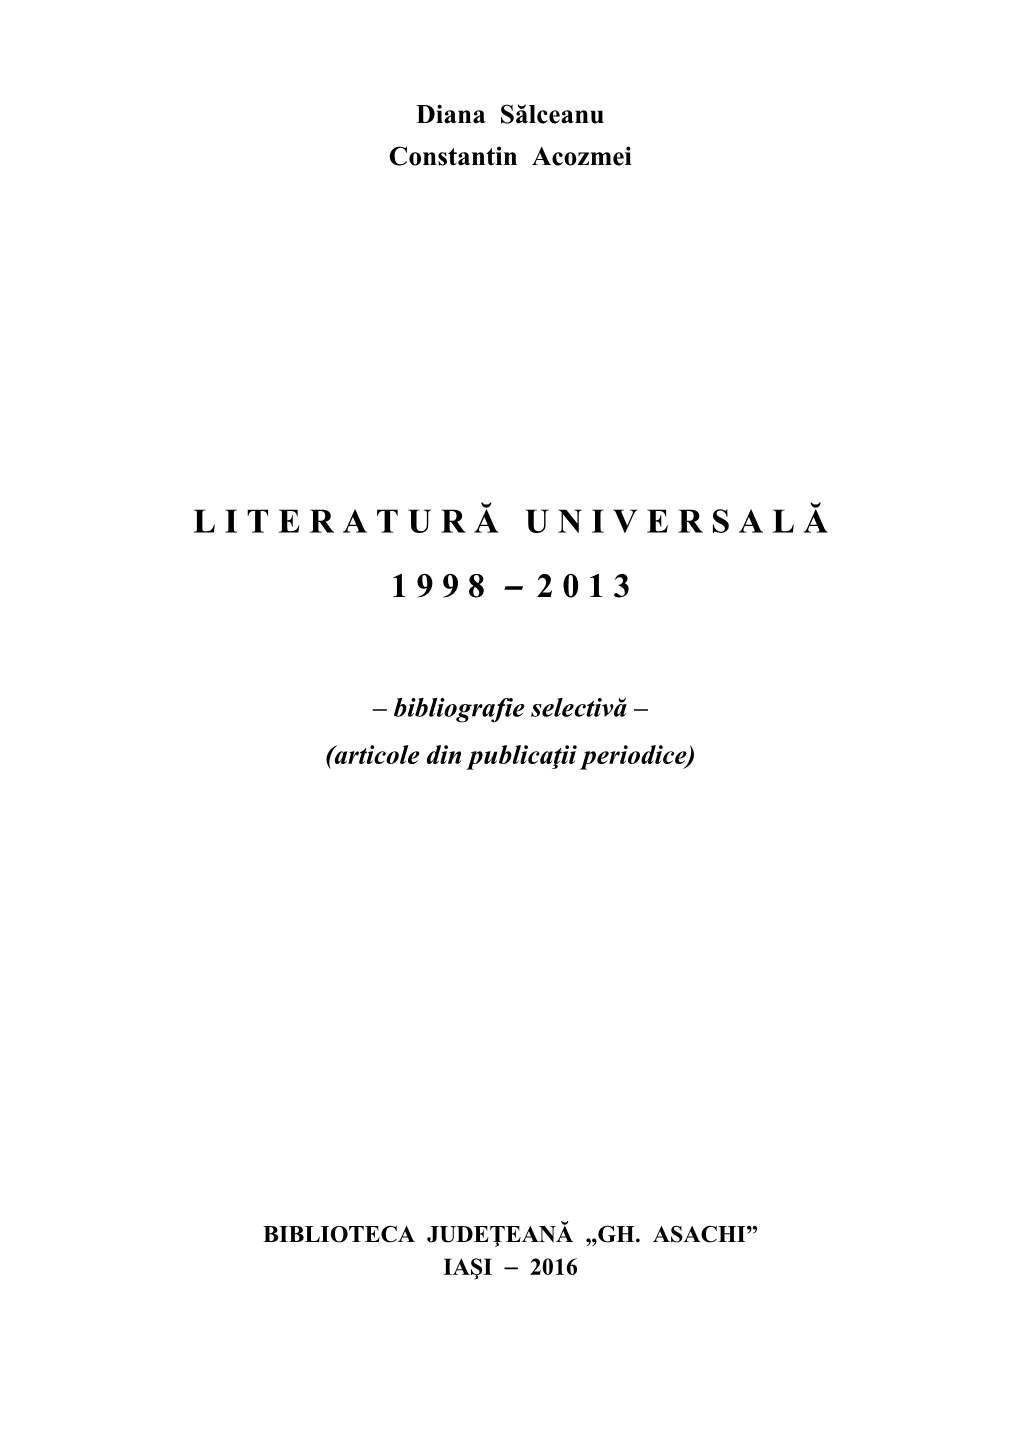 Literatură Universală, Istorie Şi Critică Literară (1 Ianuarie 2000 - 15 Iunie 2005), Publicată În 2005